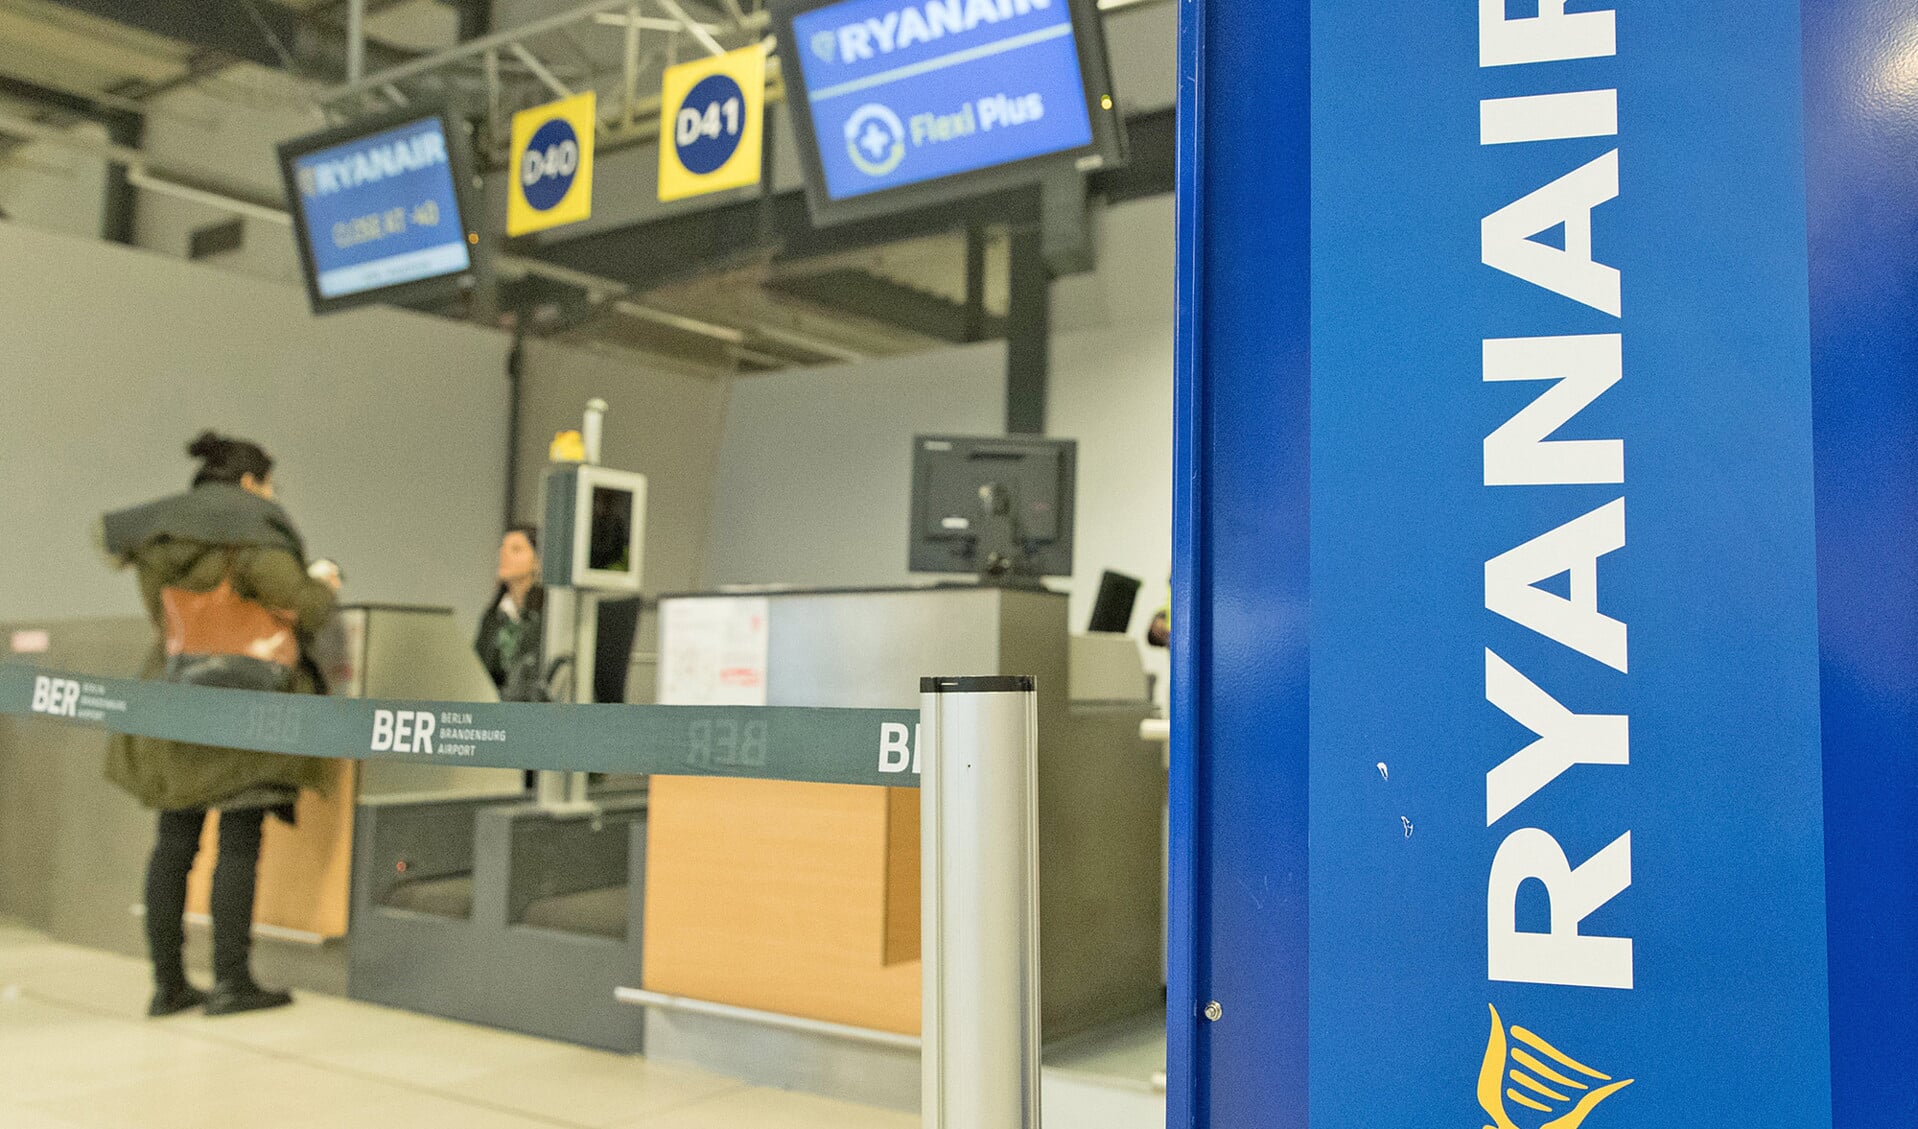 Een vertrekbalie van Ryanair op de Duitse luchthaven Berlin Schoenefeld. De Duitse pilotenvakbond Vereinigung Cockpit (VC) kondigde aan dat de piloten van Ryanair zullen deelnemen aan een stakingsactie.